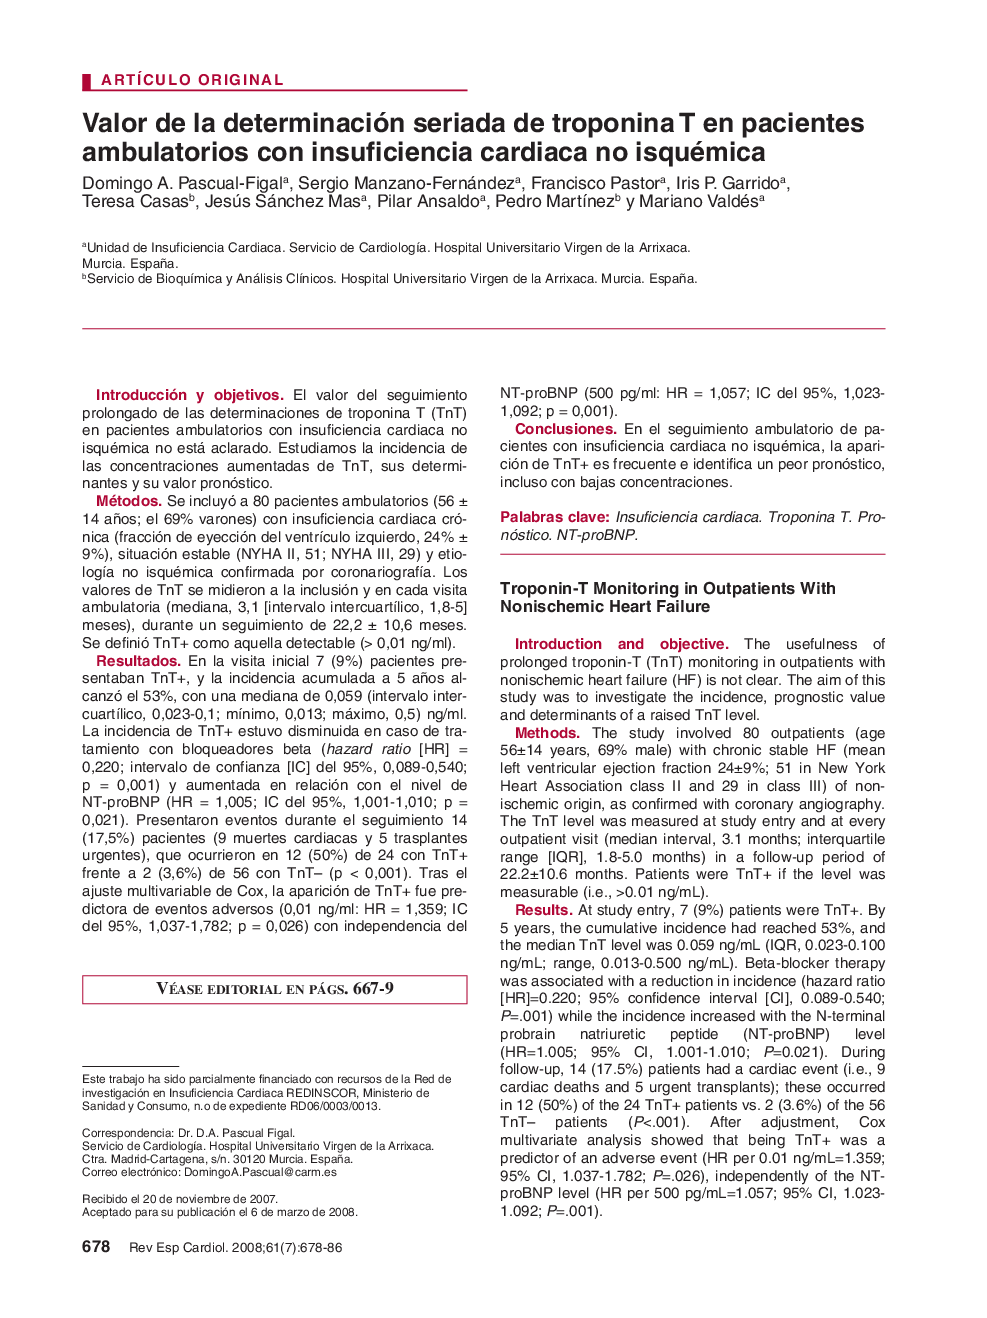 Valor de la determinación seriada de troponina T en pacientes ambulatorios con insuficiencia cardiaca no isquémica